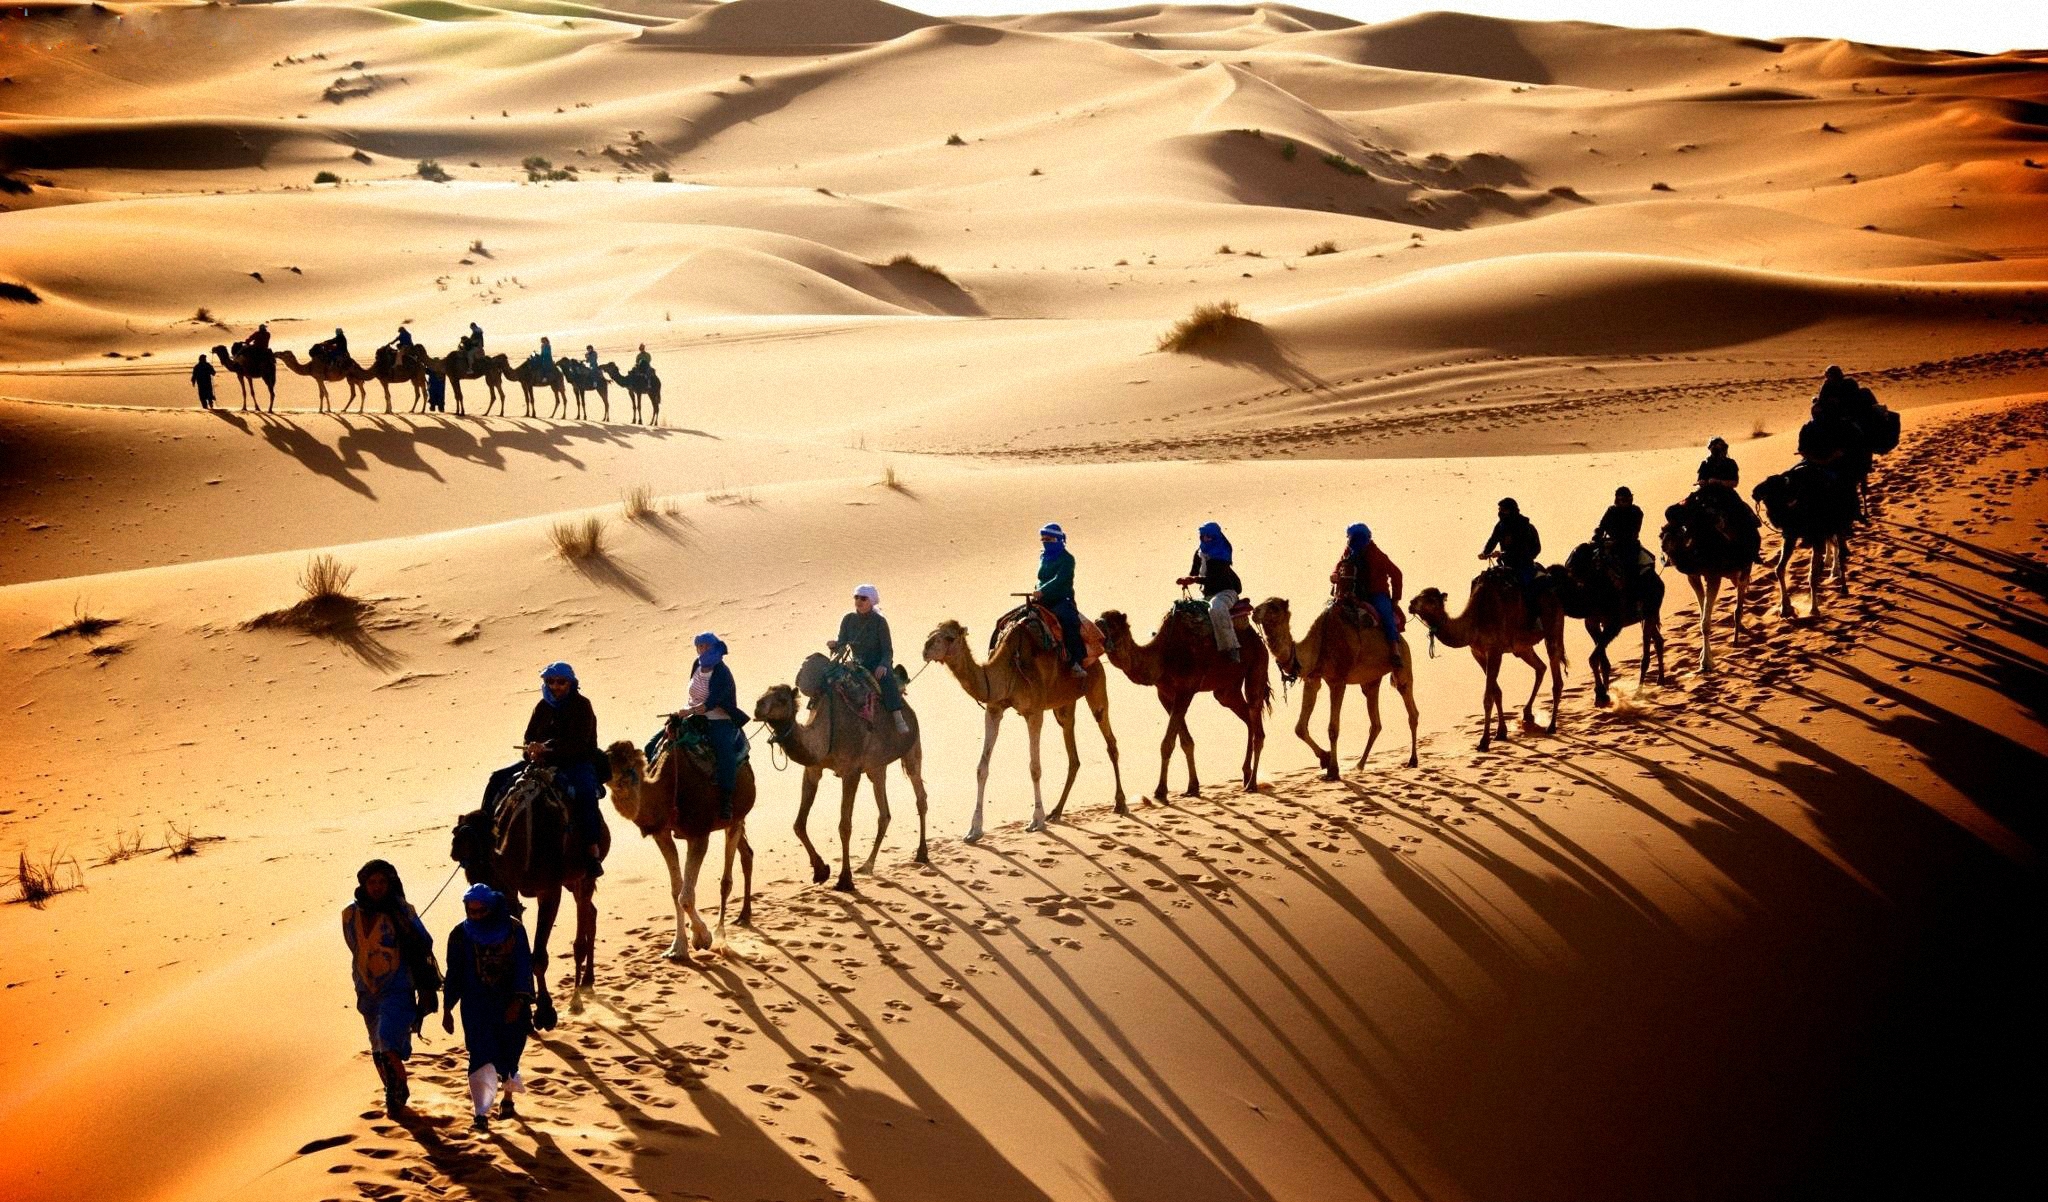 Д караван. Верблюд Караван шелковый путь. Великий шелковый путь Караван. Караван верблюдов в пустыне.